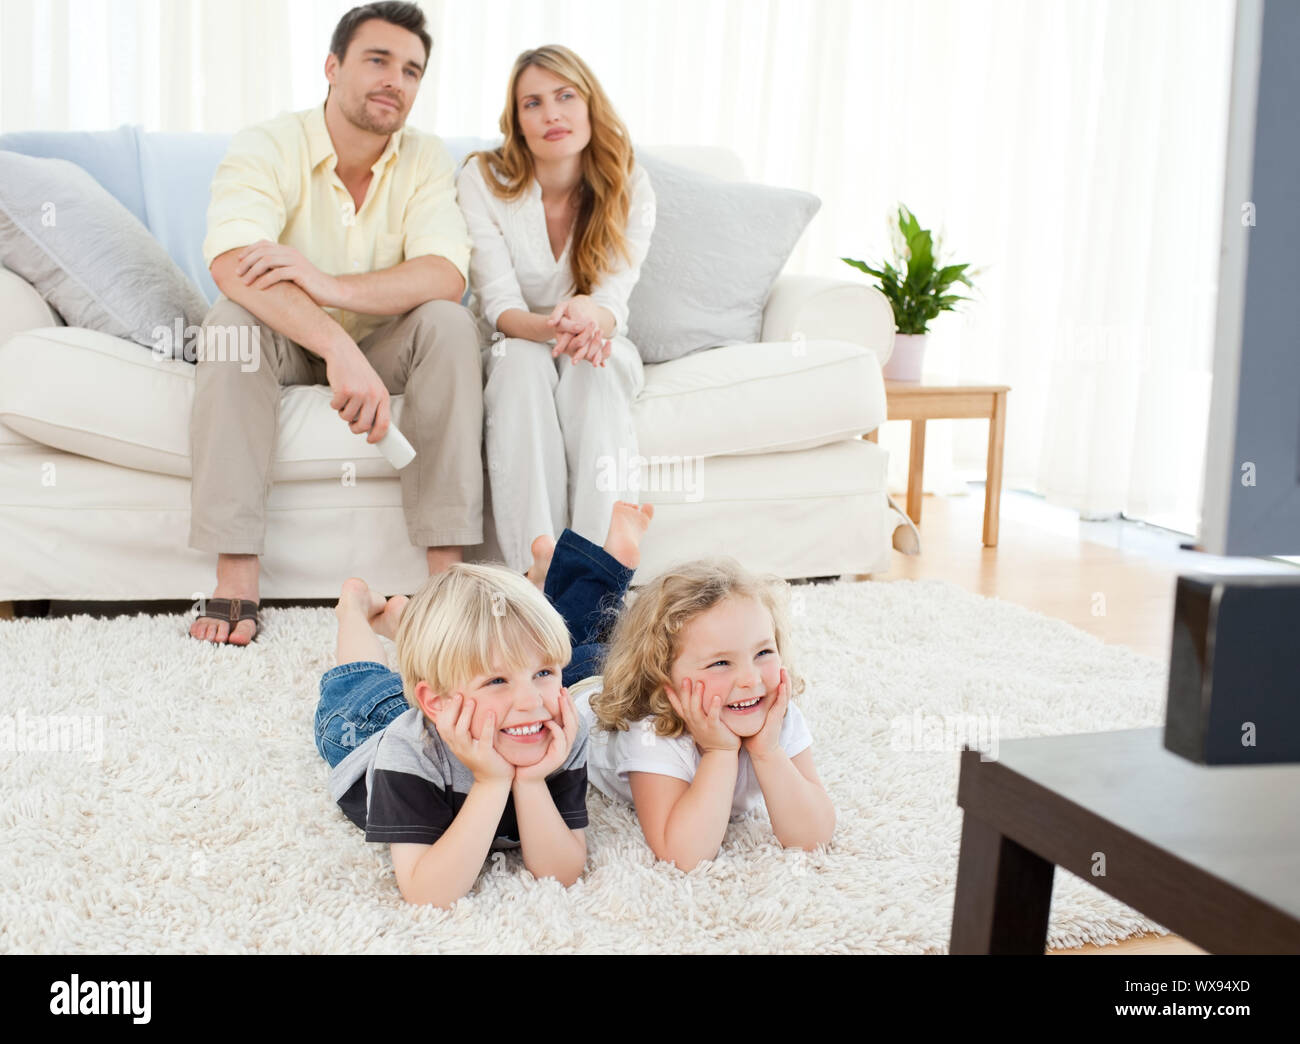 Is he in the living room. Родители и дети. Семья на диване. Семья сидит в гостиннтй. Семья в интерьере.